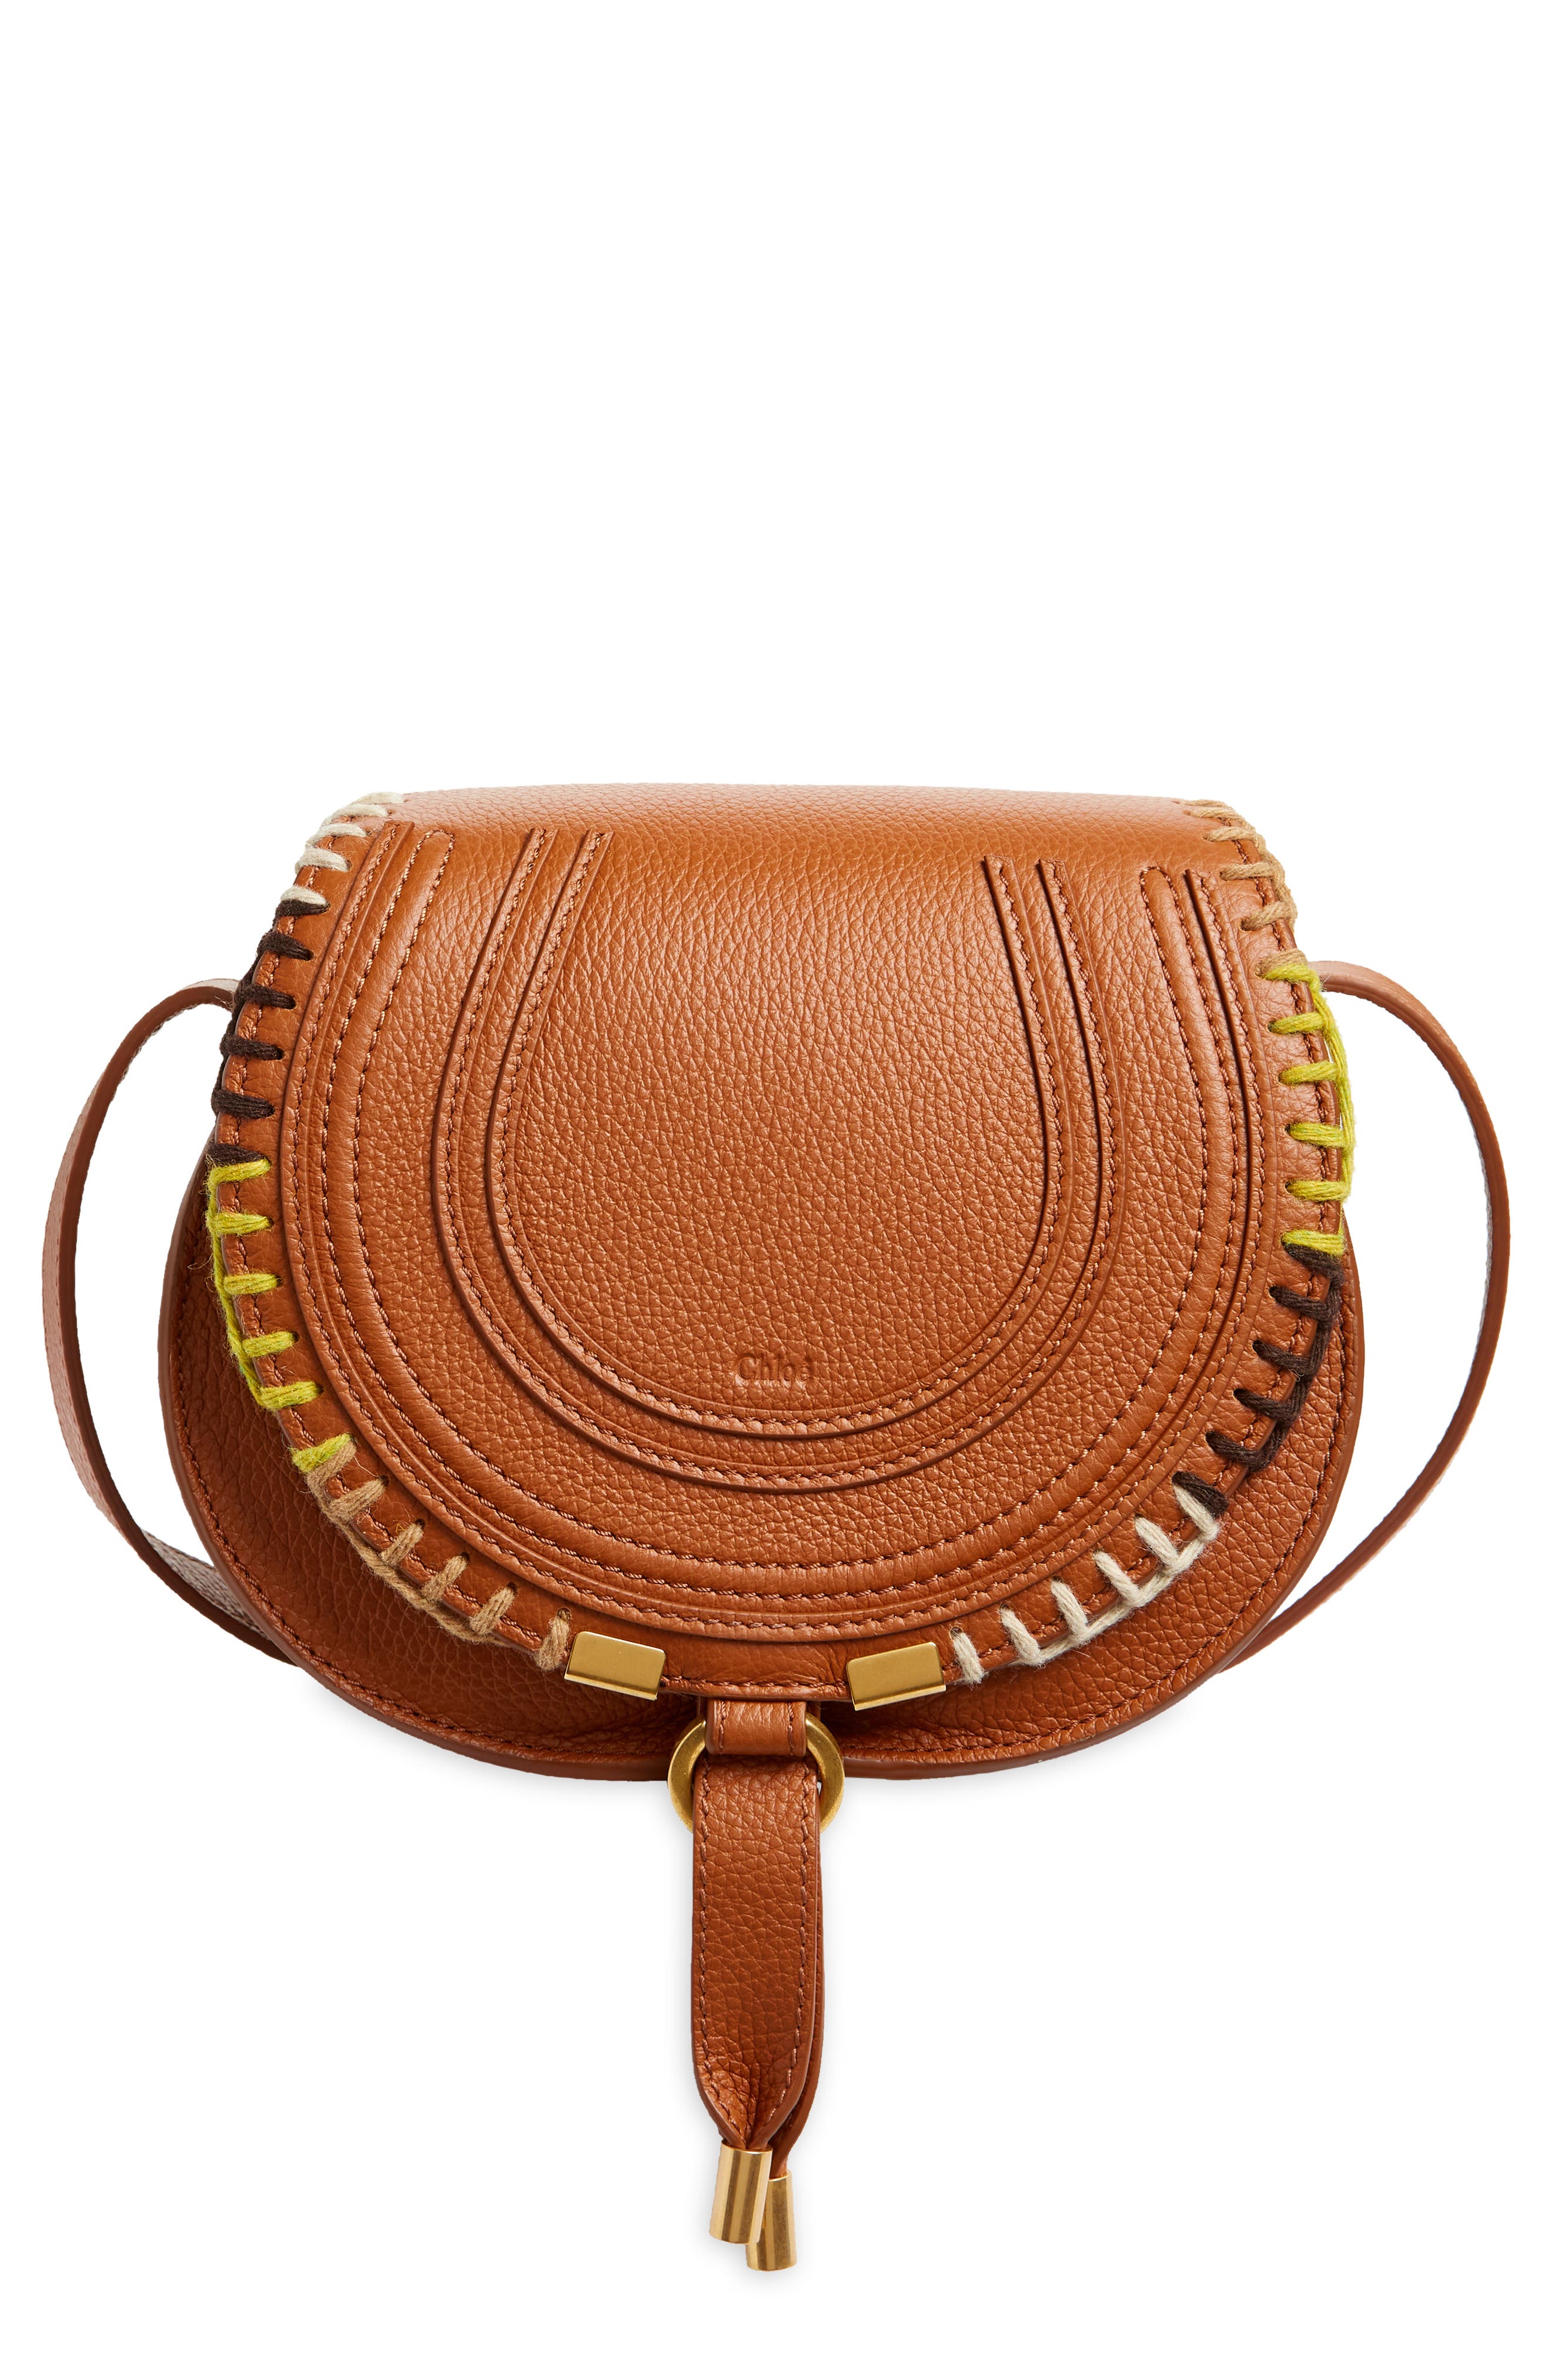 Chloe Orange & gold Chloe Long wallet purse brass plate gold studded Chloe purse 